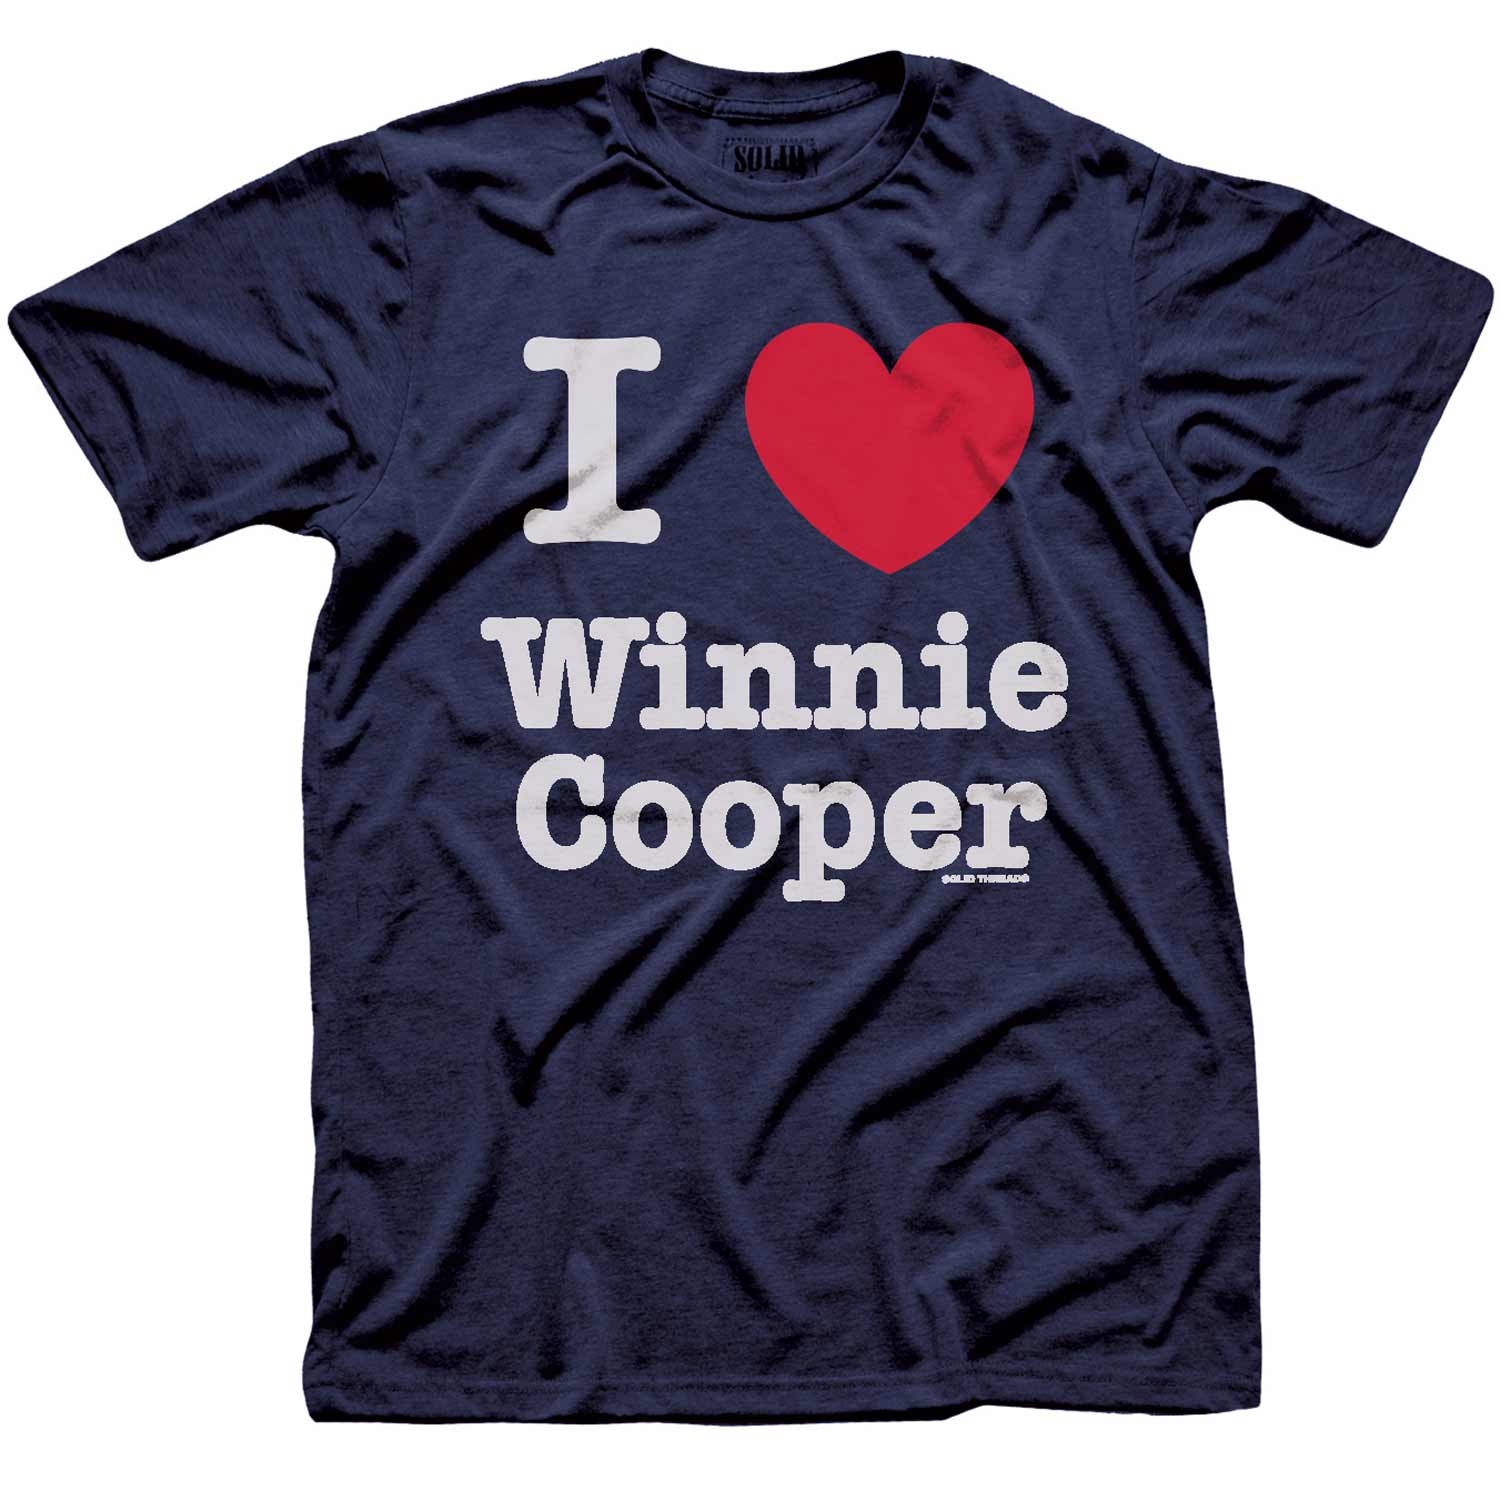 Men's Winnie Cooper Vintage Graphic Tee | Retro Wonder Years T-shirt for Men | Solid Threads